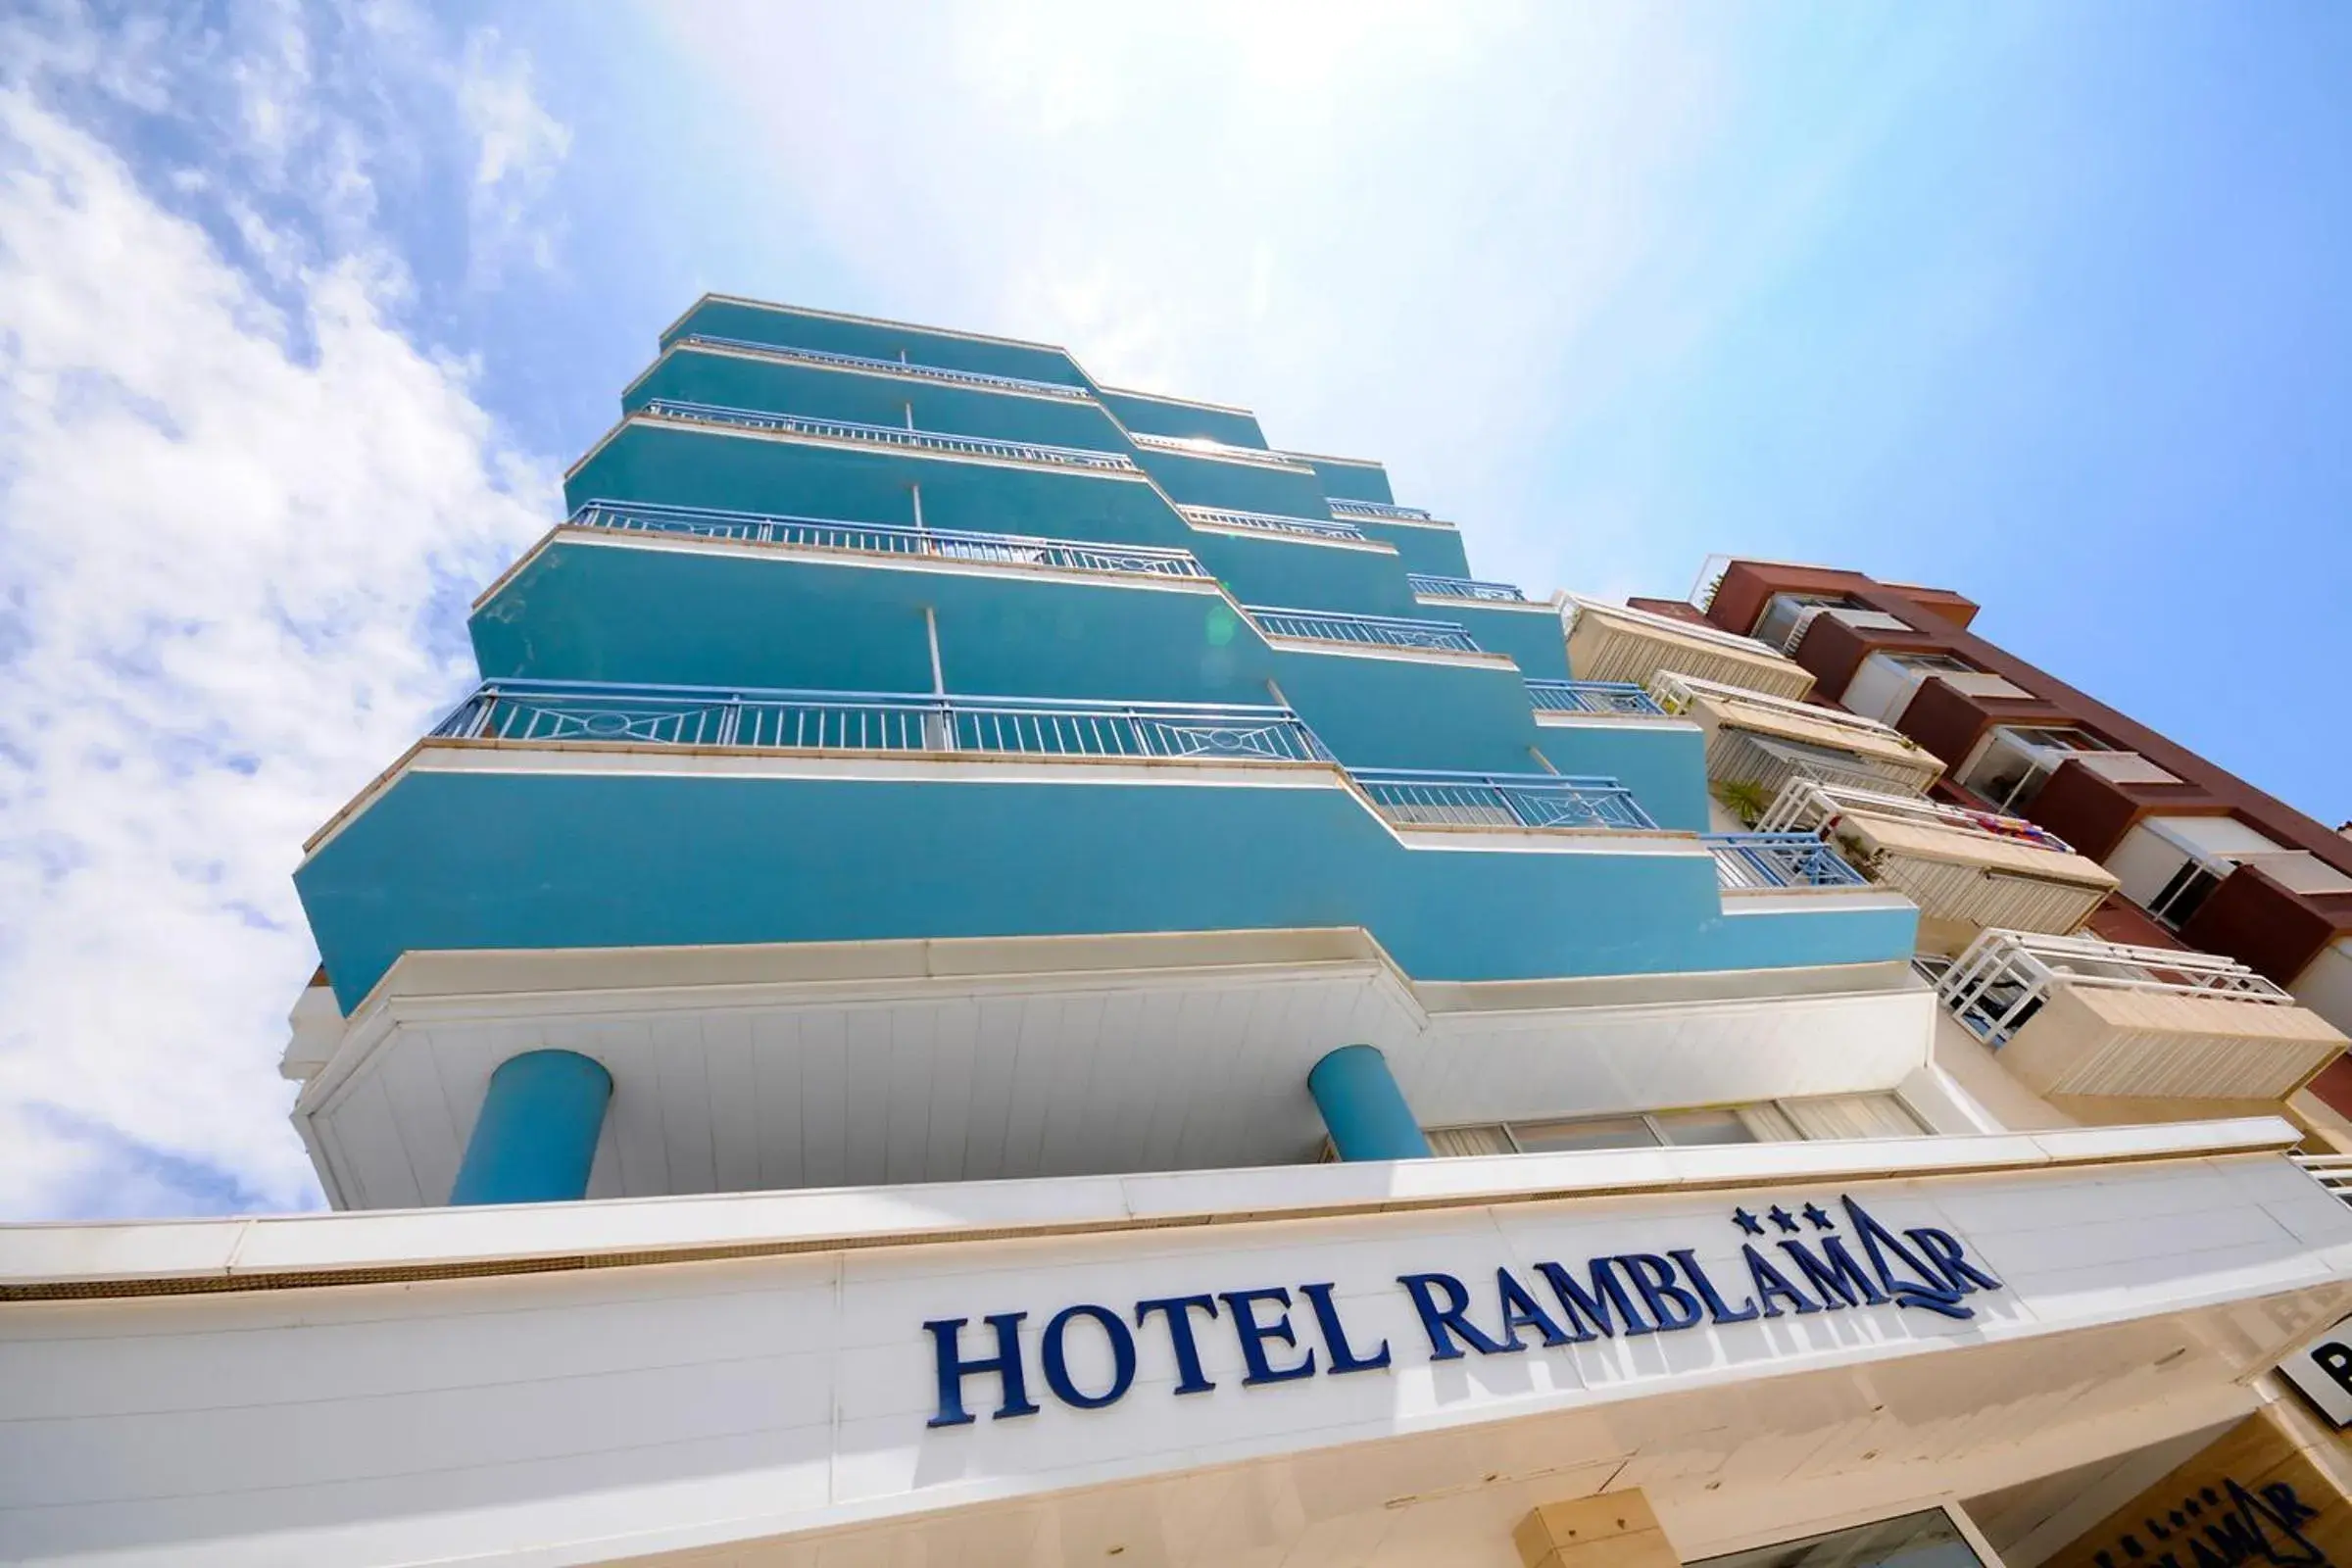 Facade/entrance, Property Building in Hotel Ramblamar